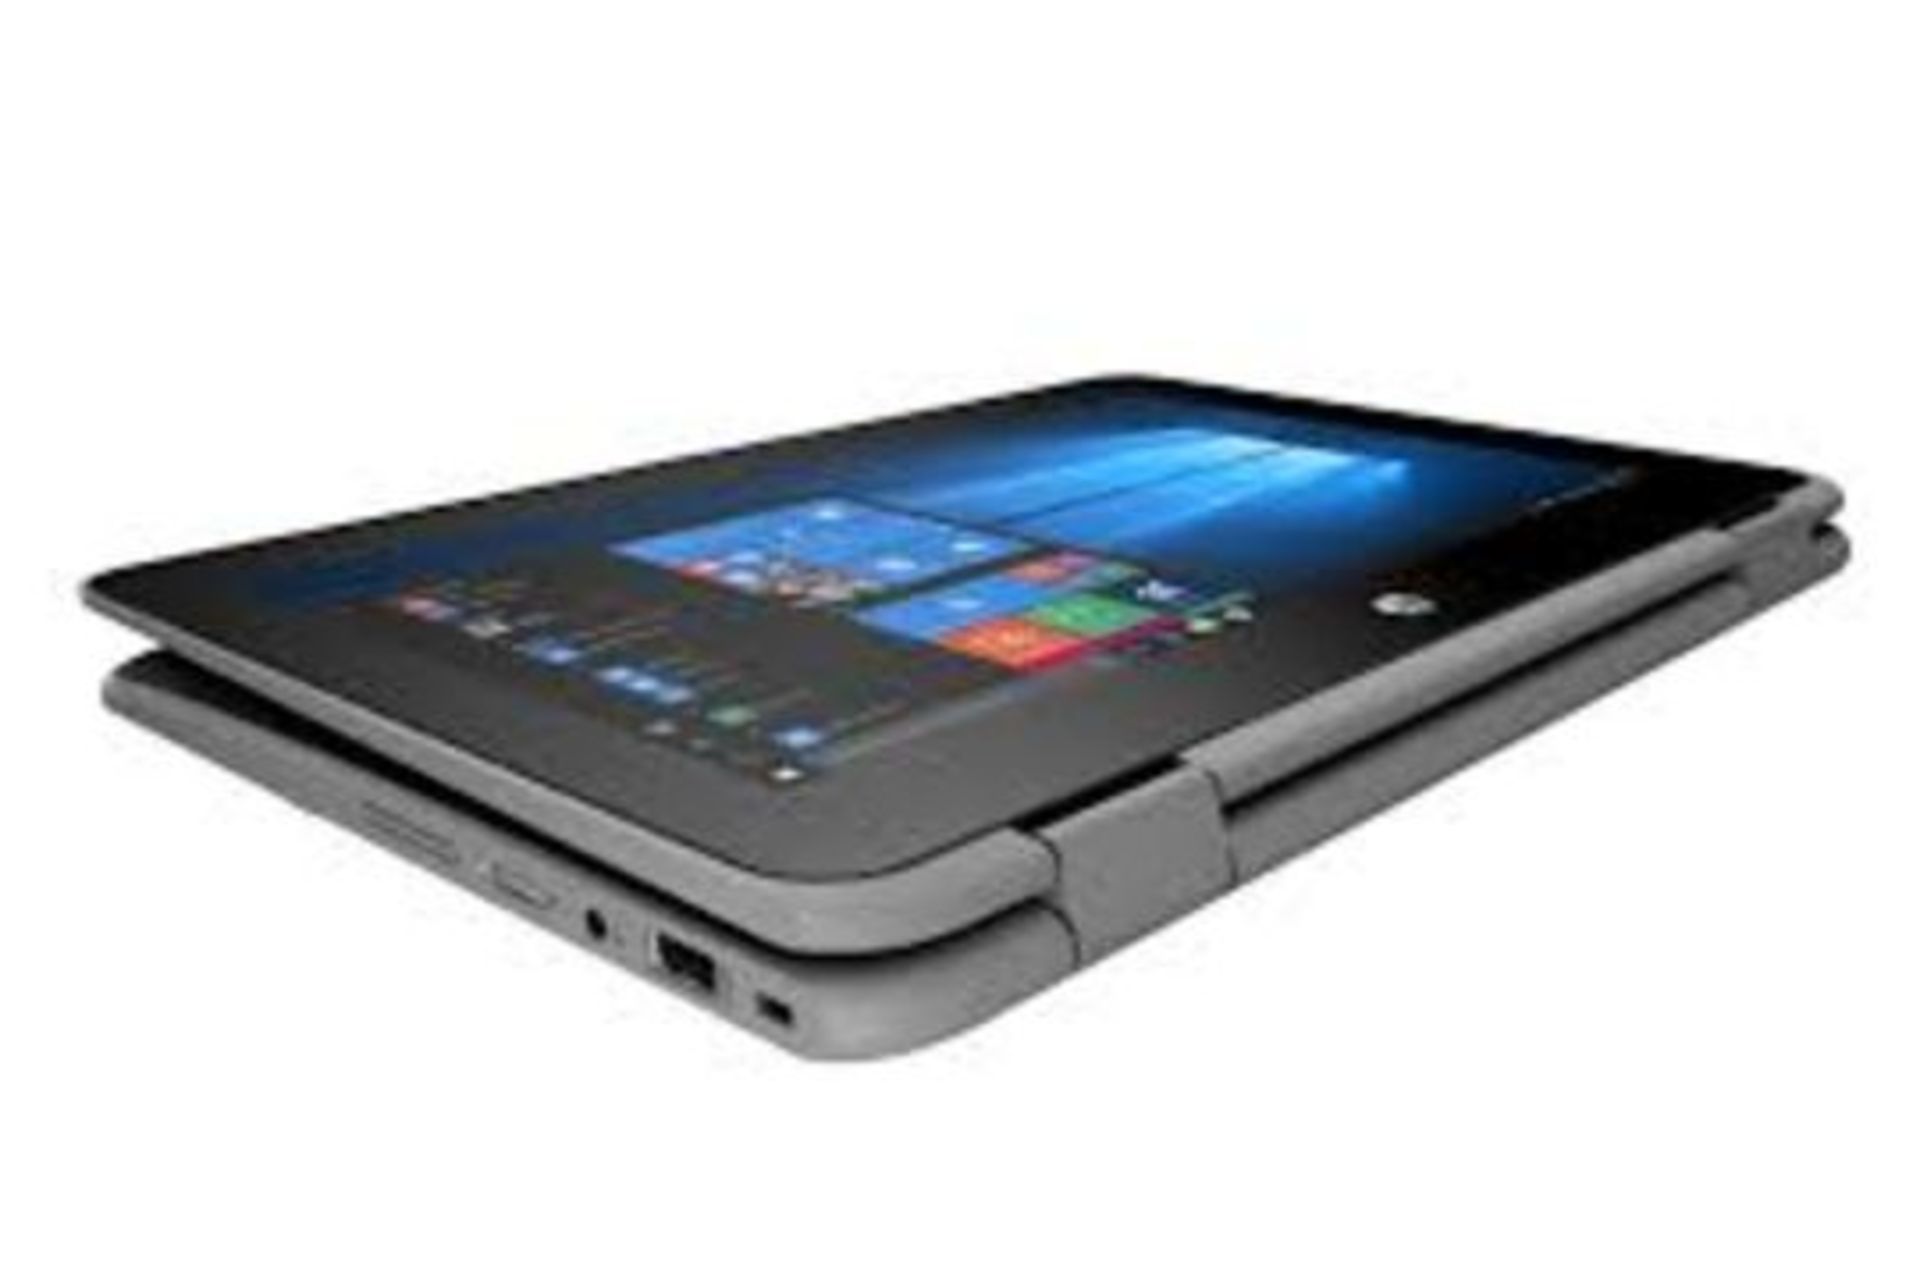 HP ProBook x360 11 G1 EE 2 IN 1 Laptop (Pentium Quad Core/4 GB/128 GB SSD) RRP £450. - Image 2 of 3